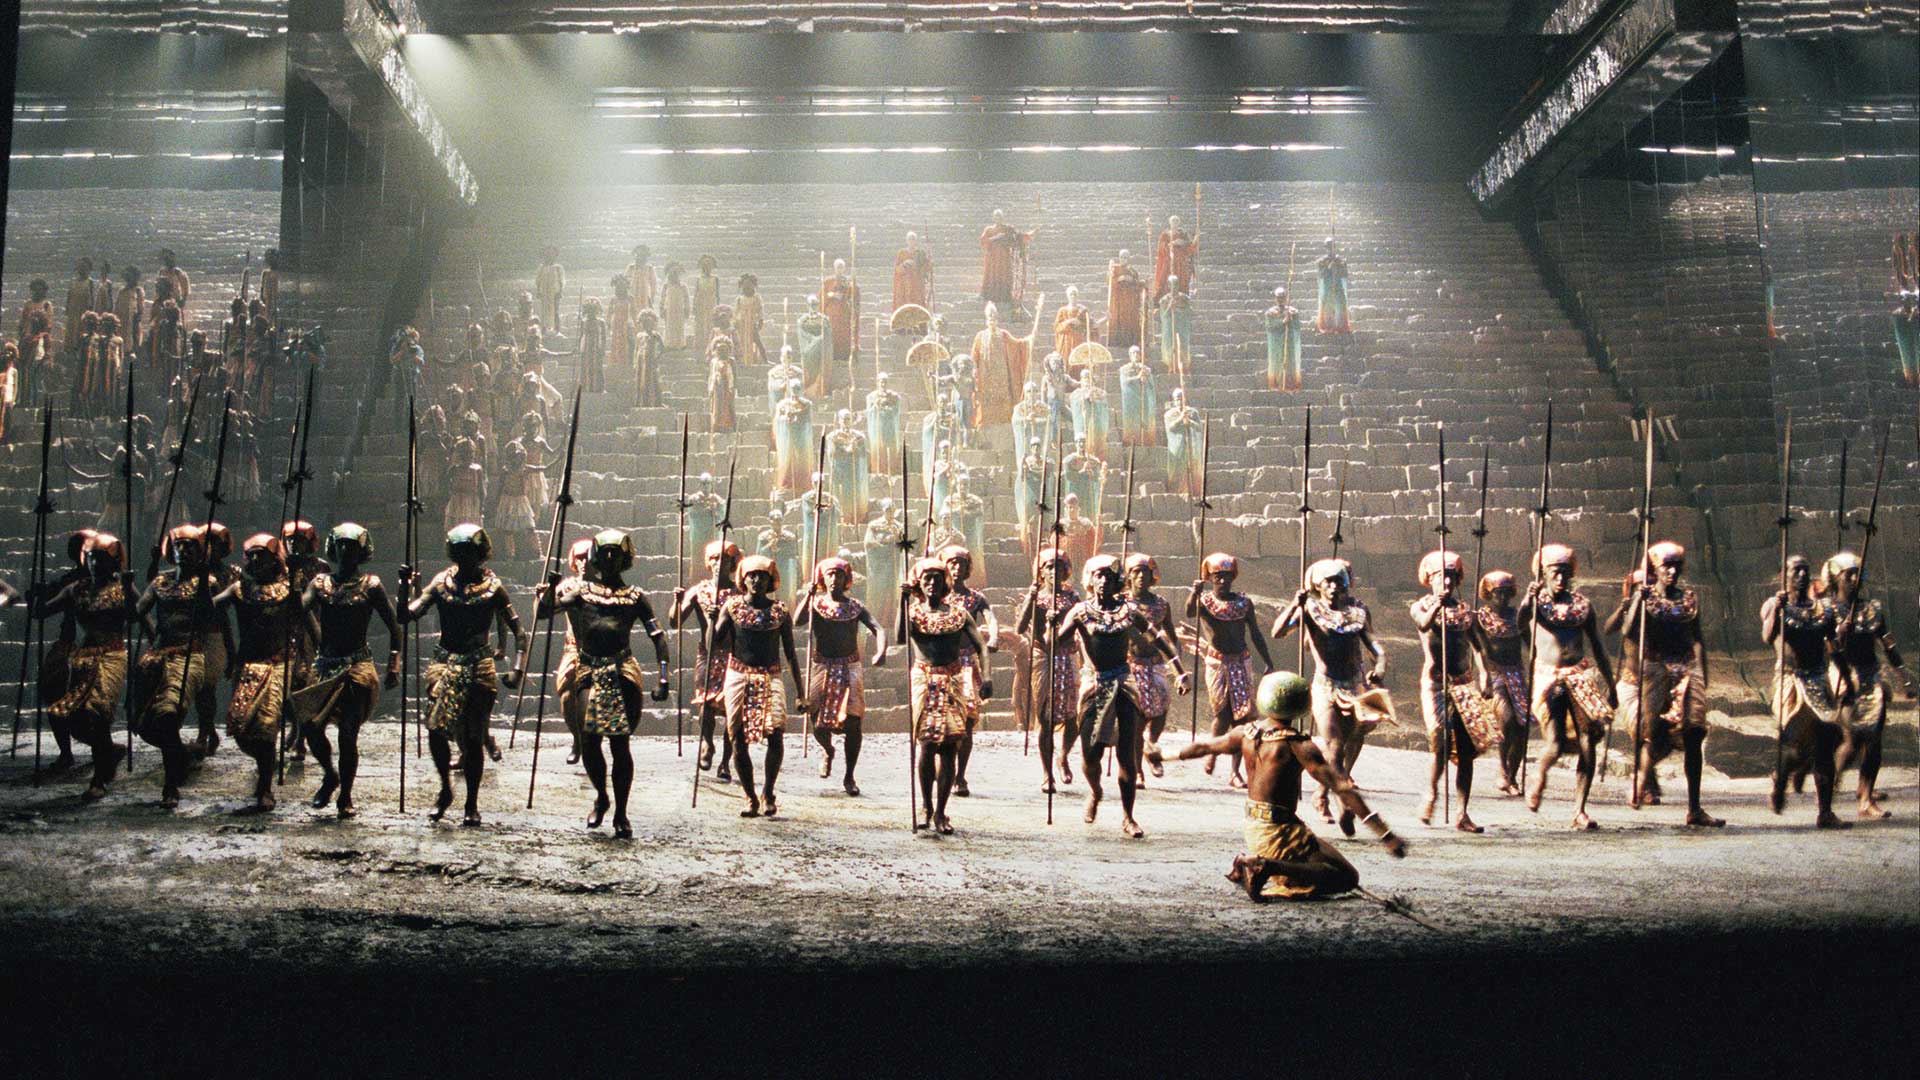 La imponente ‘Aída’ regresa al Teatro Real 20 años después